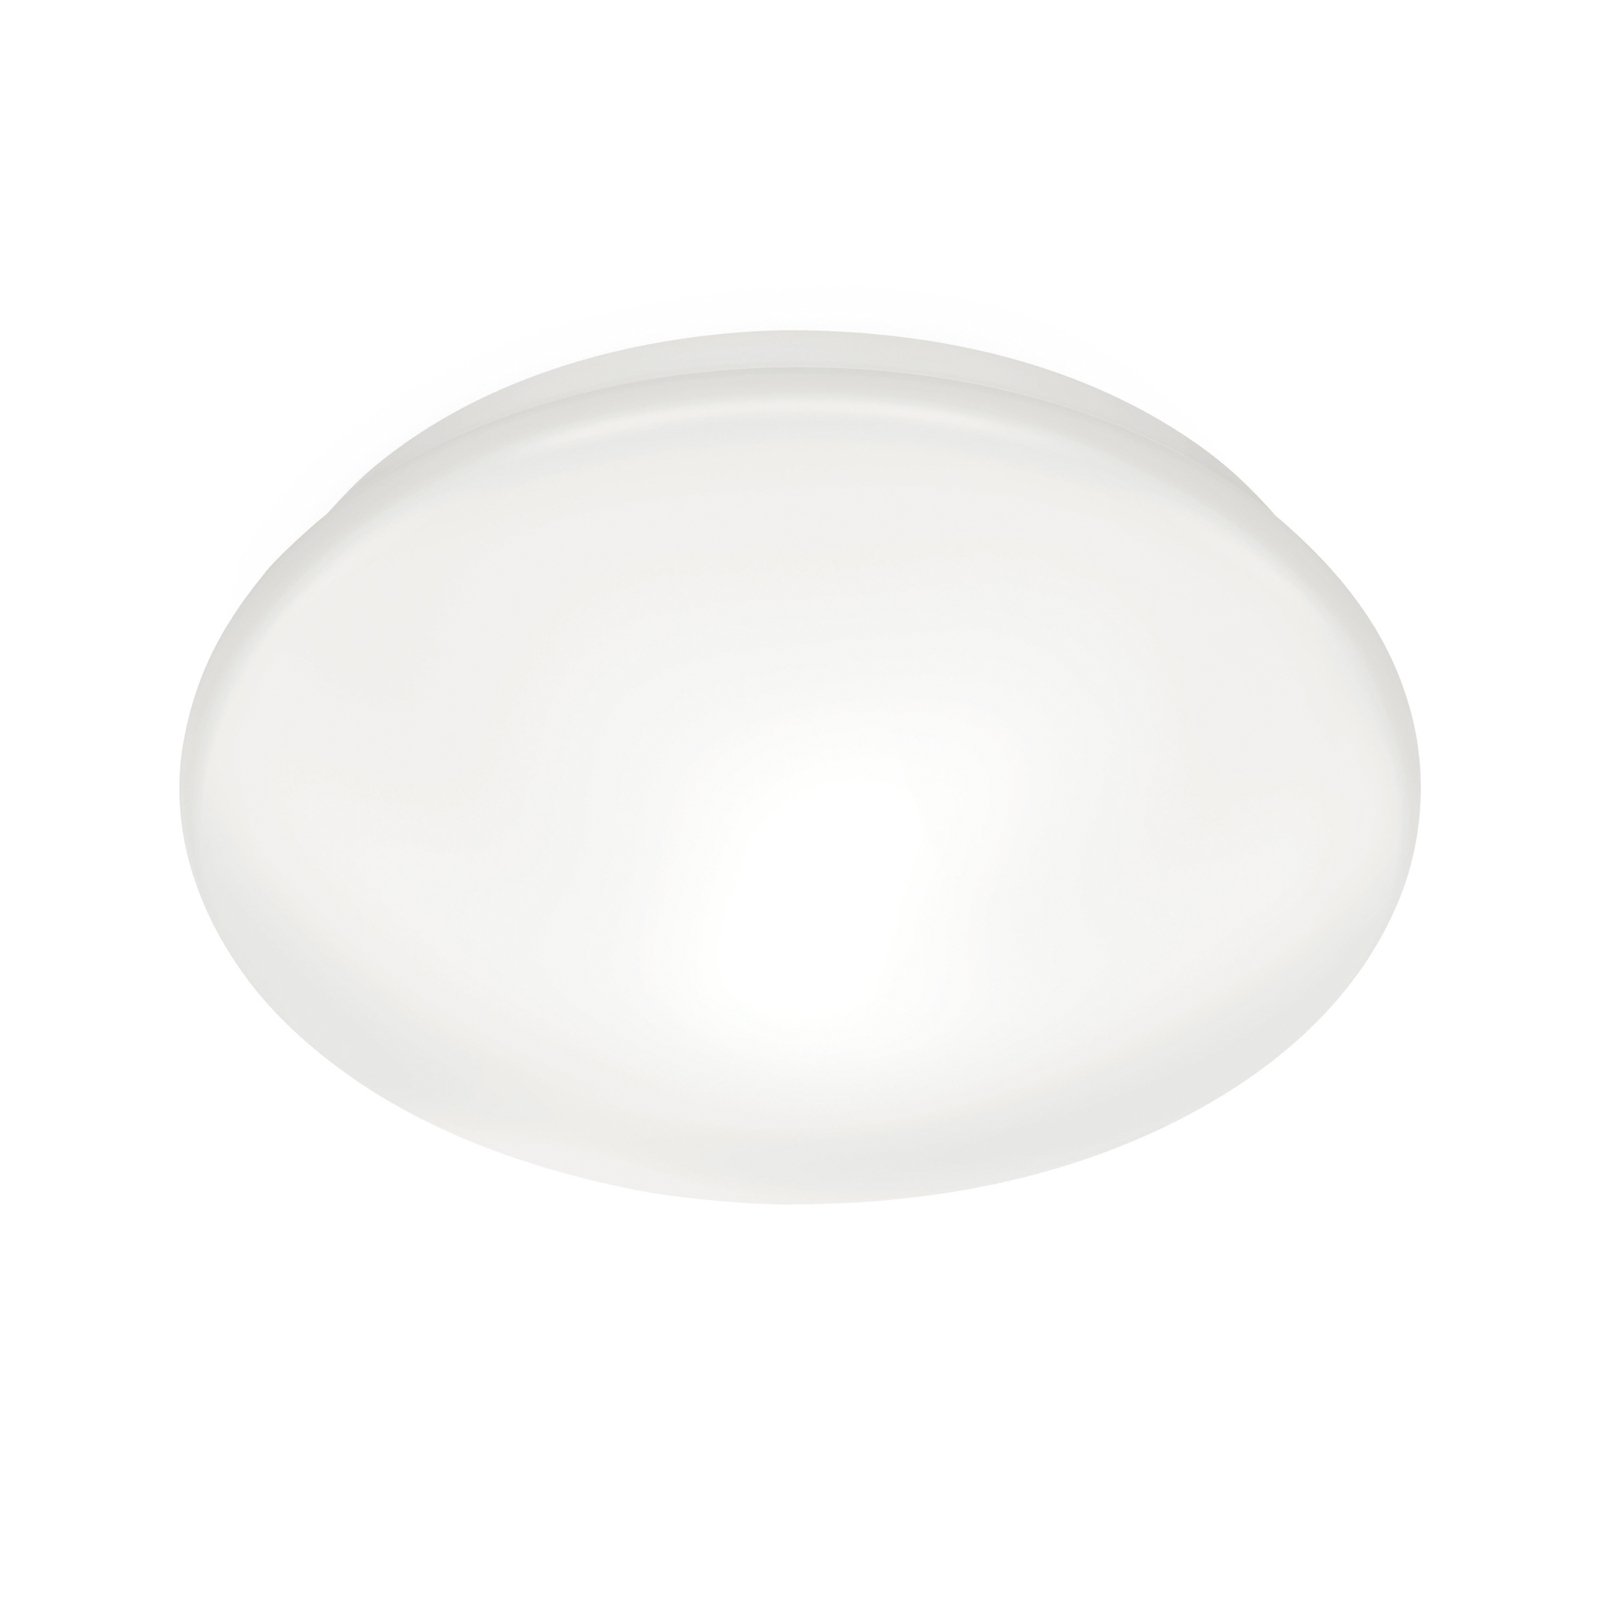 WiZ Adria LED plafondlamp, 17 W, warmwit